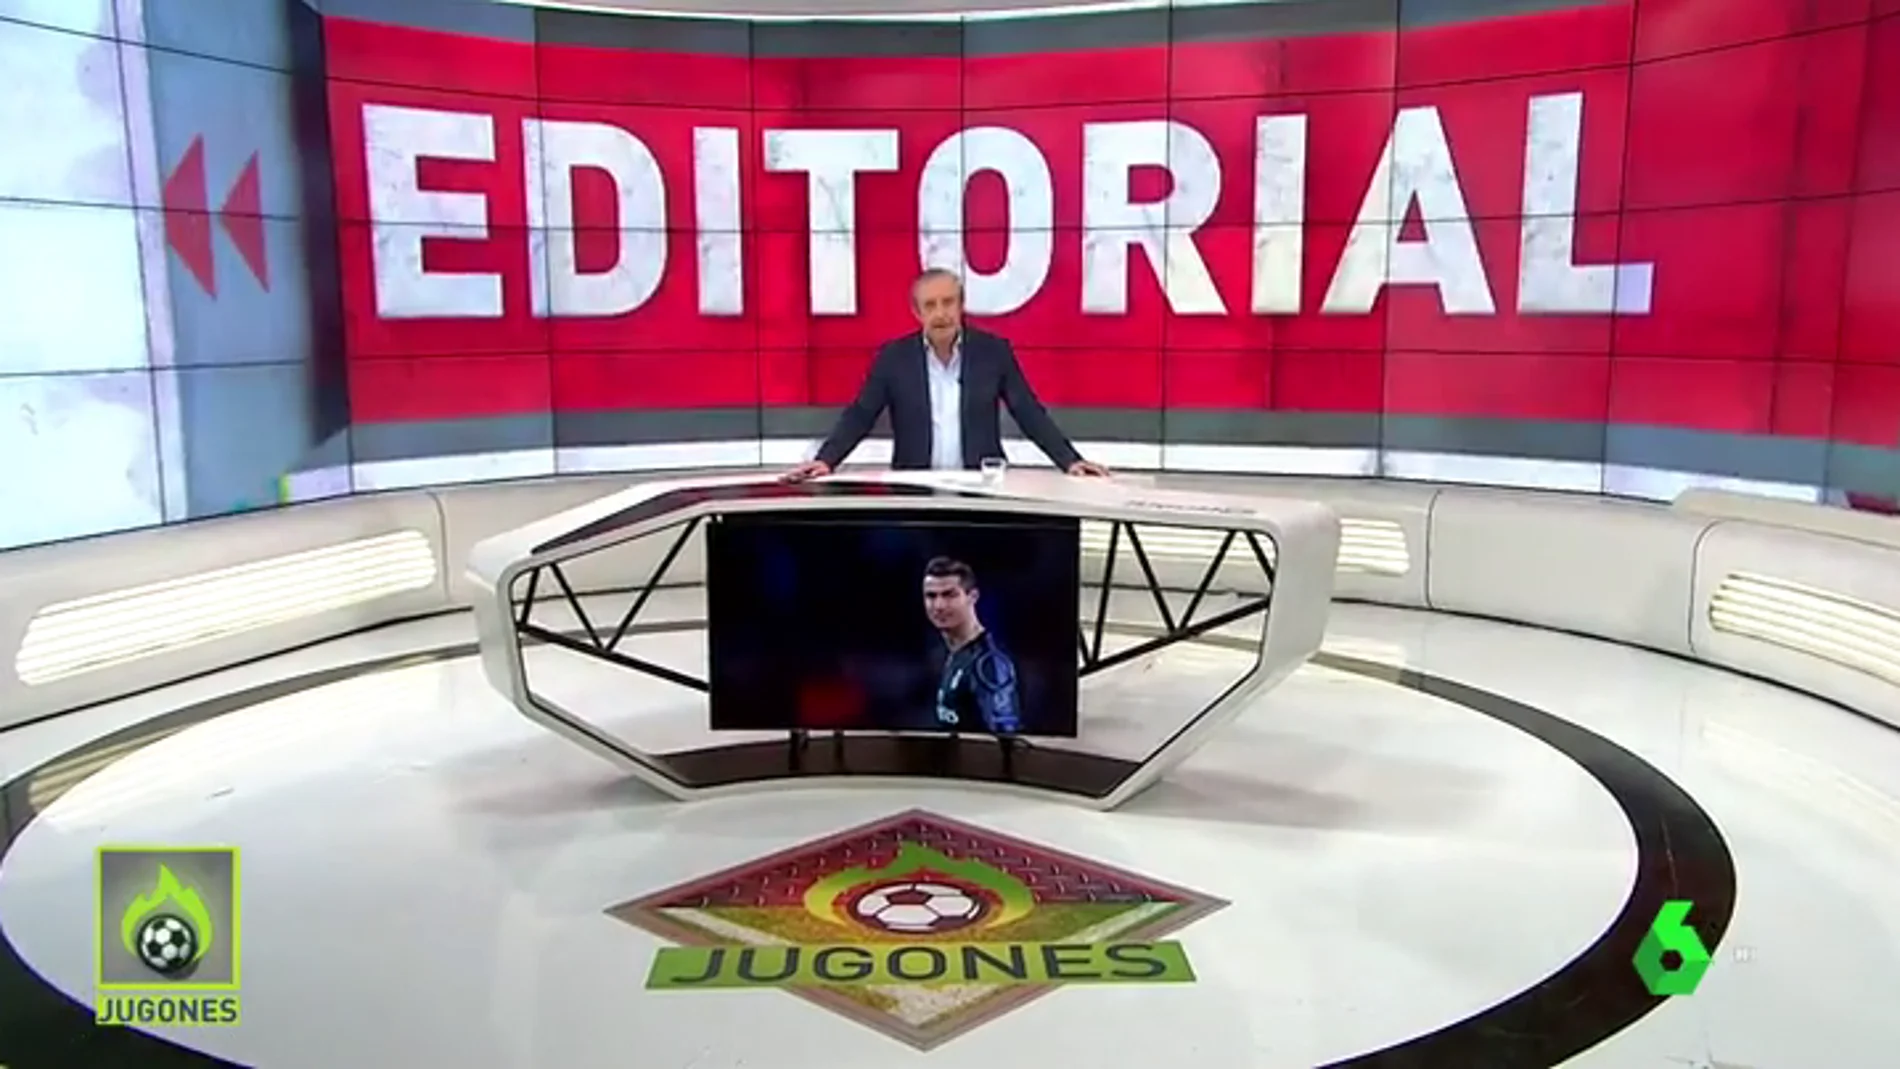 Josep Pedrerol: "El Madrid es peor sin Cristiano… pero sin Cristiano, puede jugar mejor"